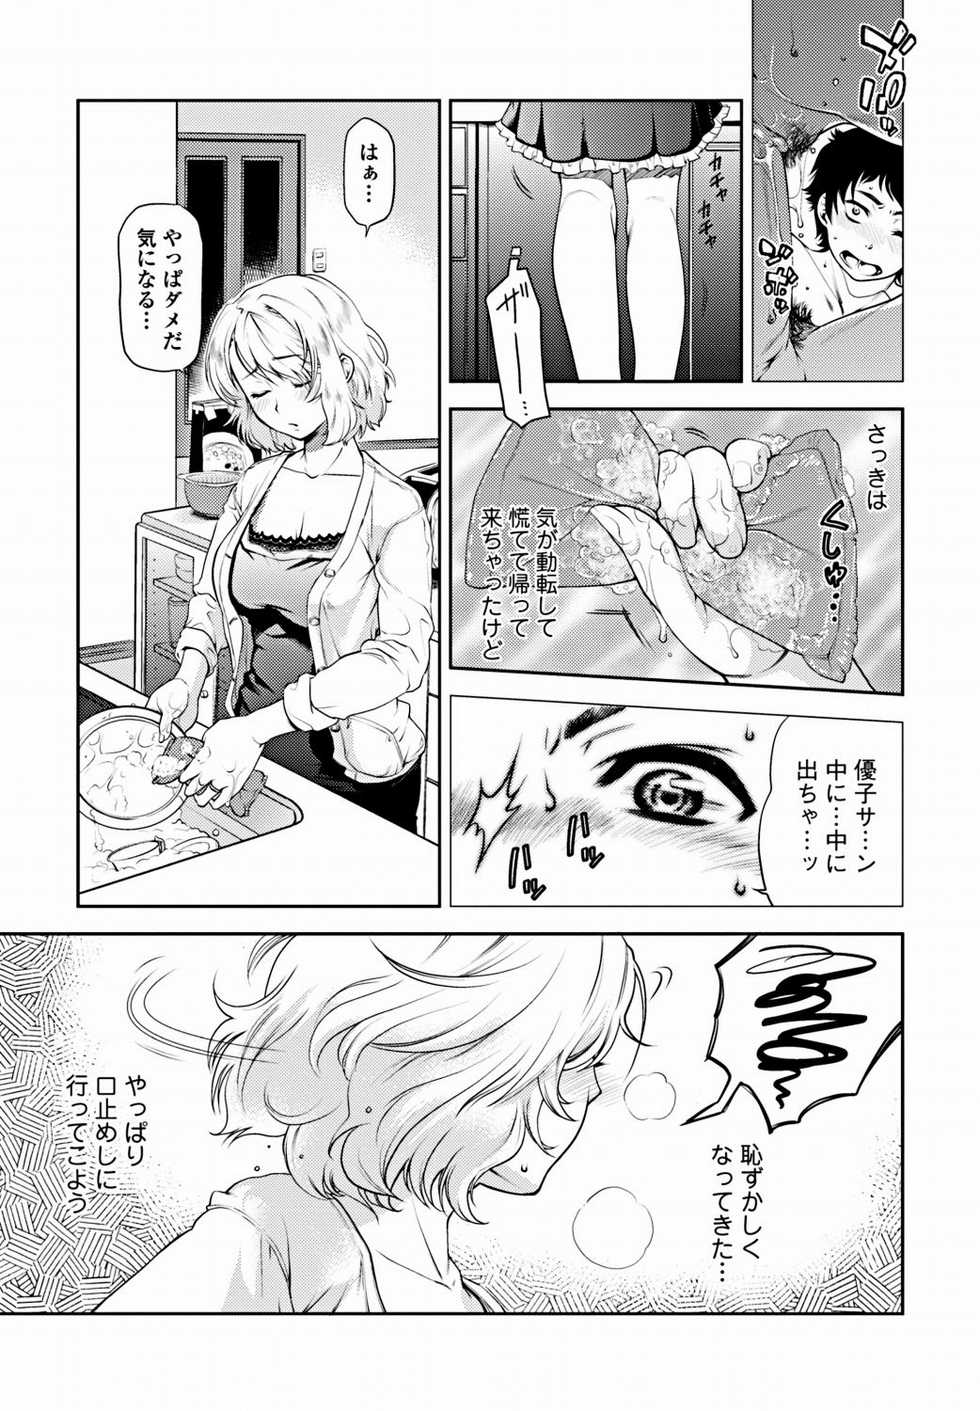 Bishoujo Kakumei KIWAME 2012-02 Vol. 18 [Digital] - Page 26